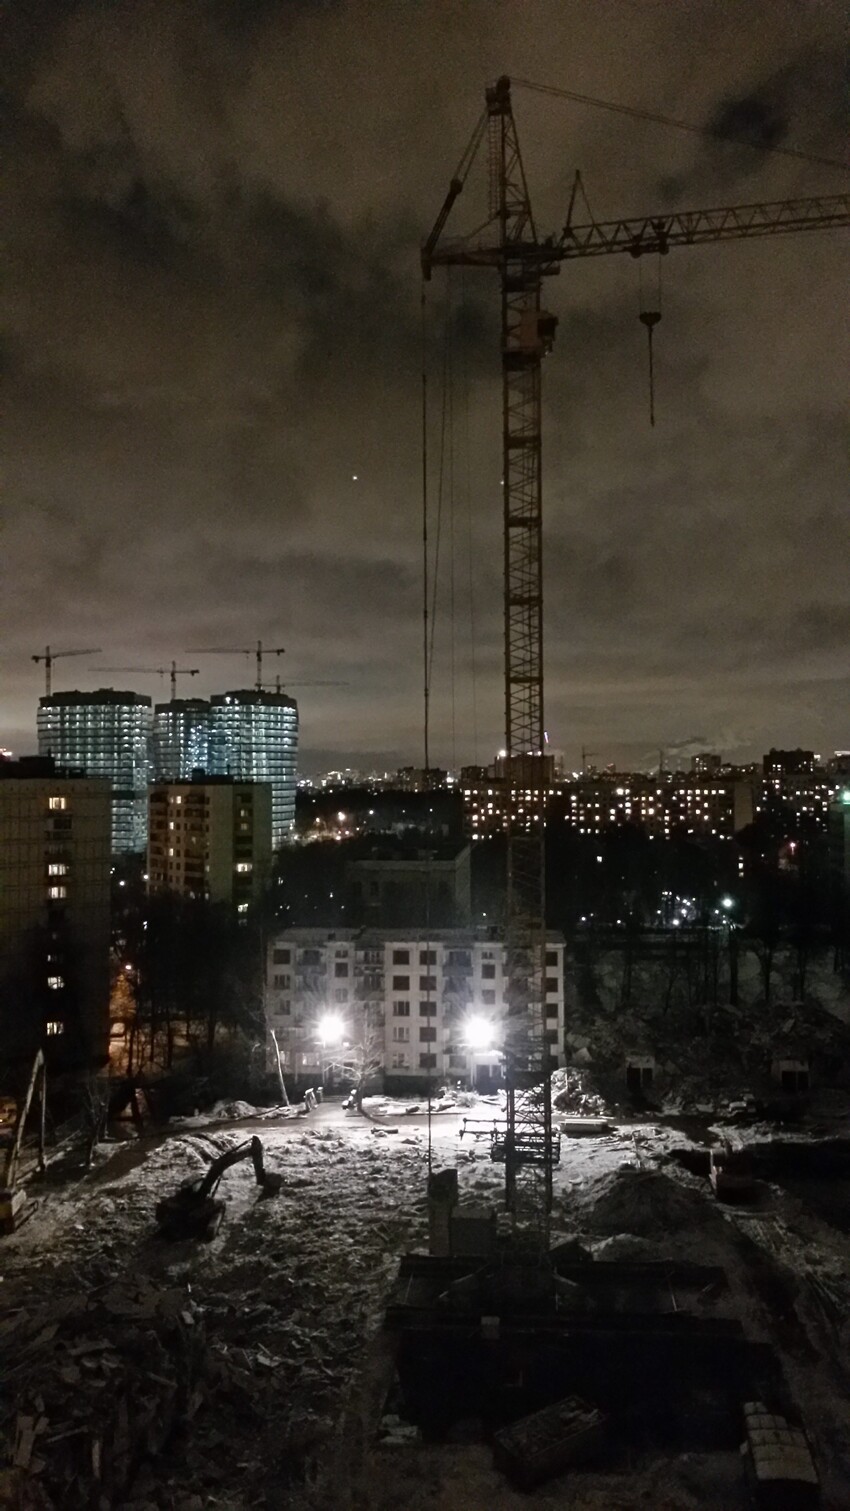 Строительство многоэтажного дома в Москве